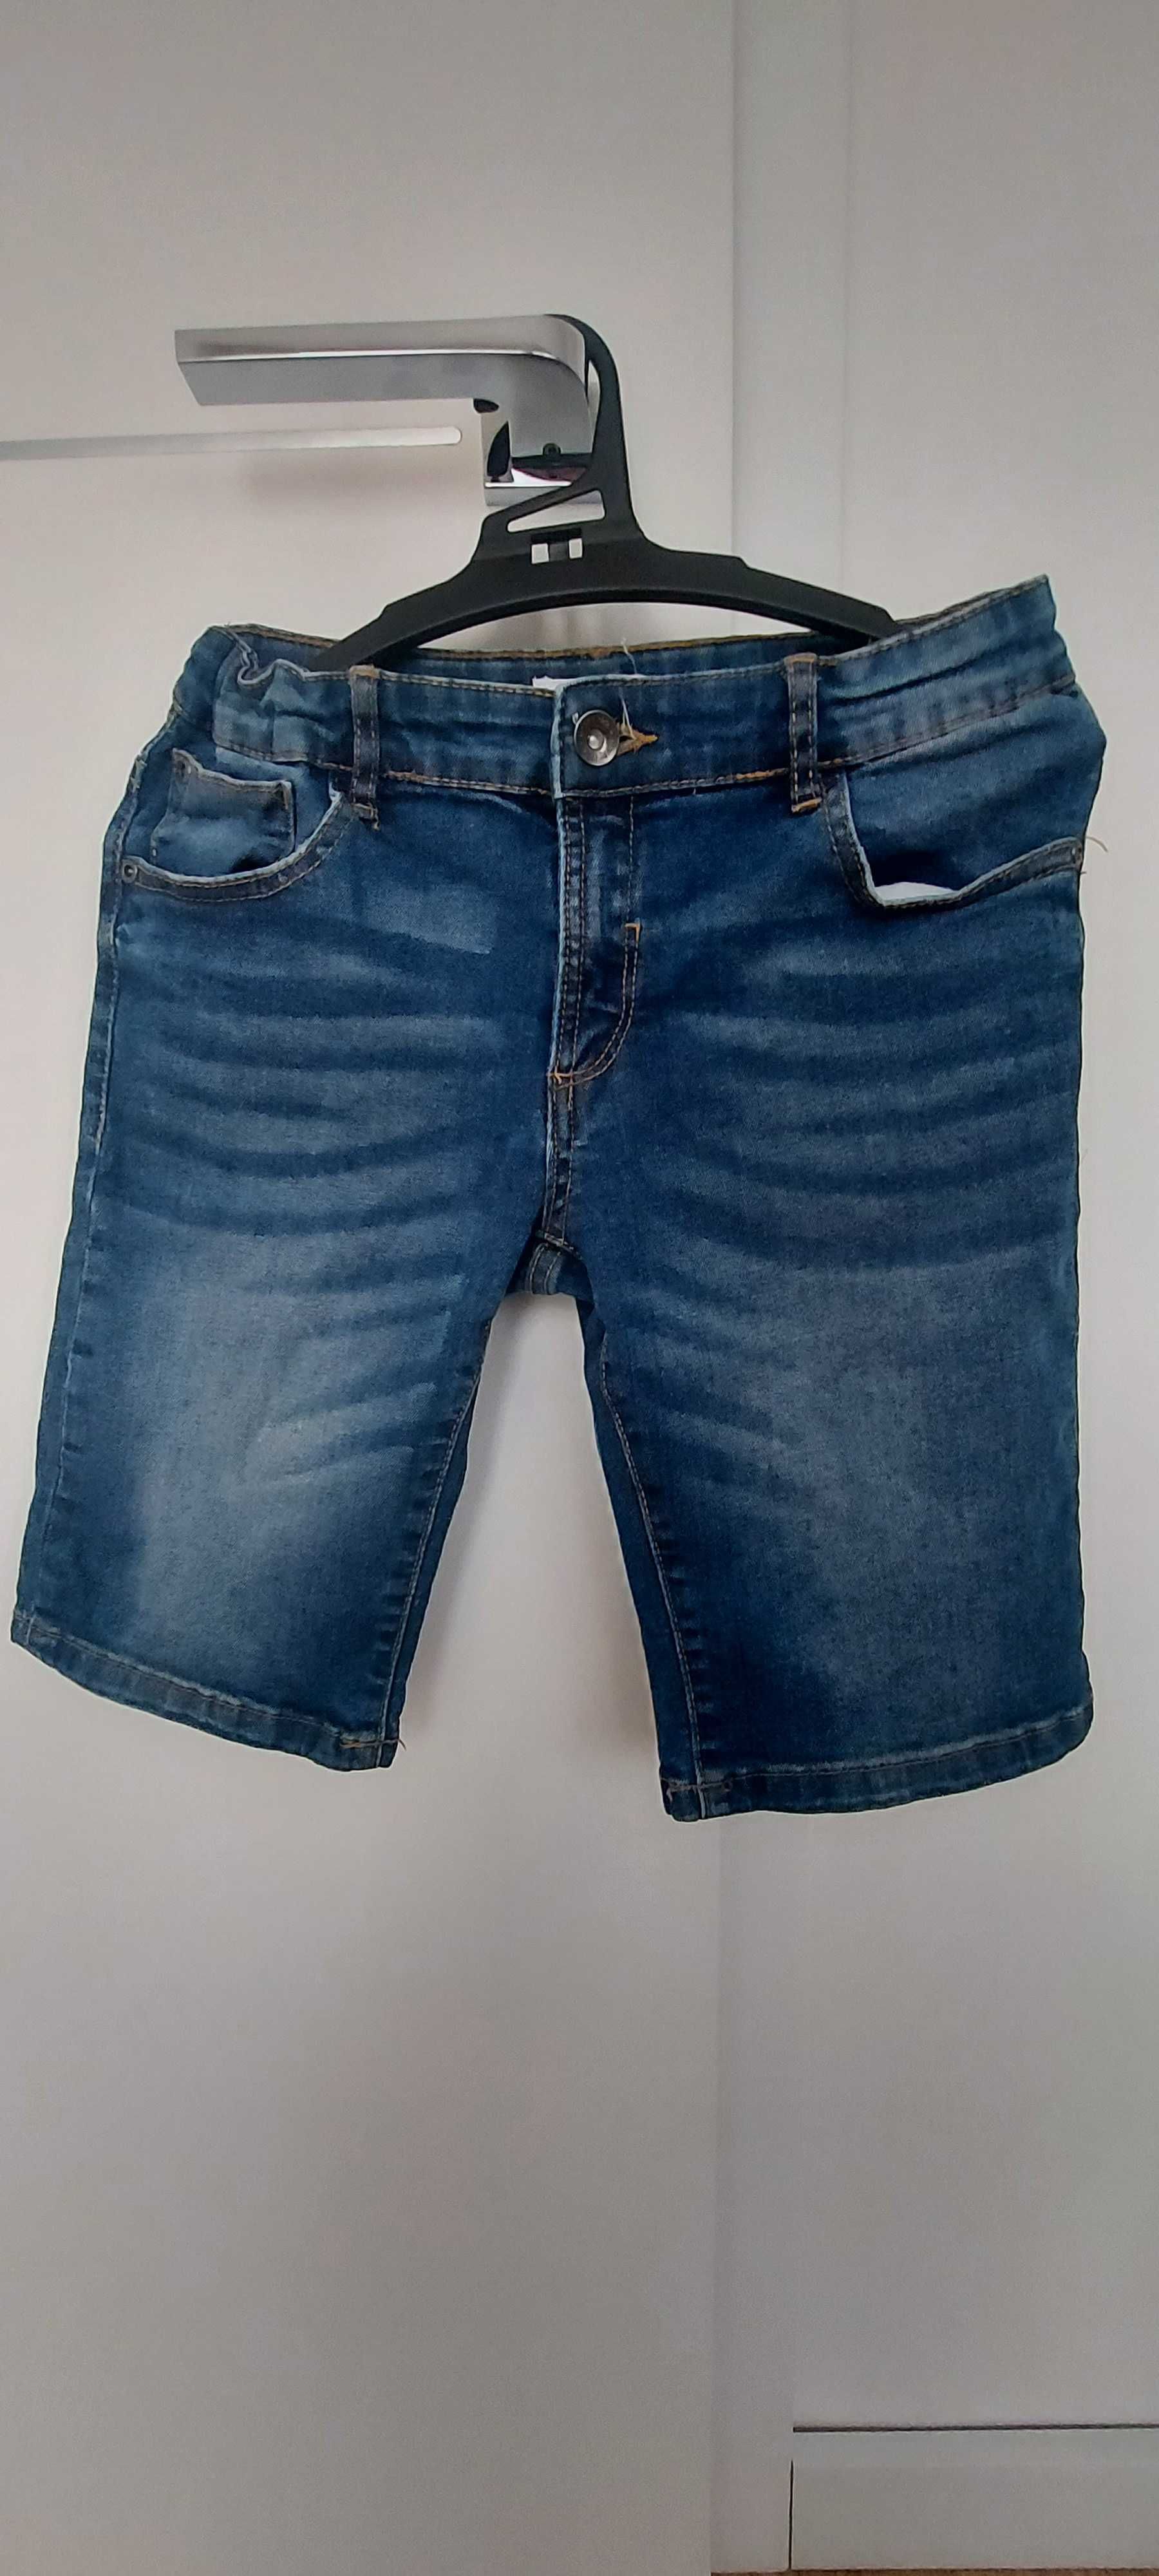 Spodenki jeans krótkie 134 cm